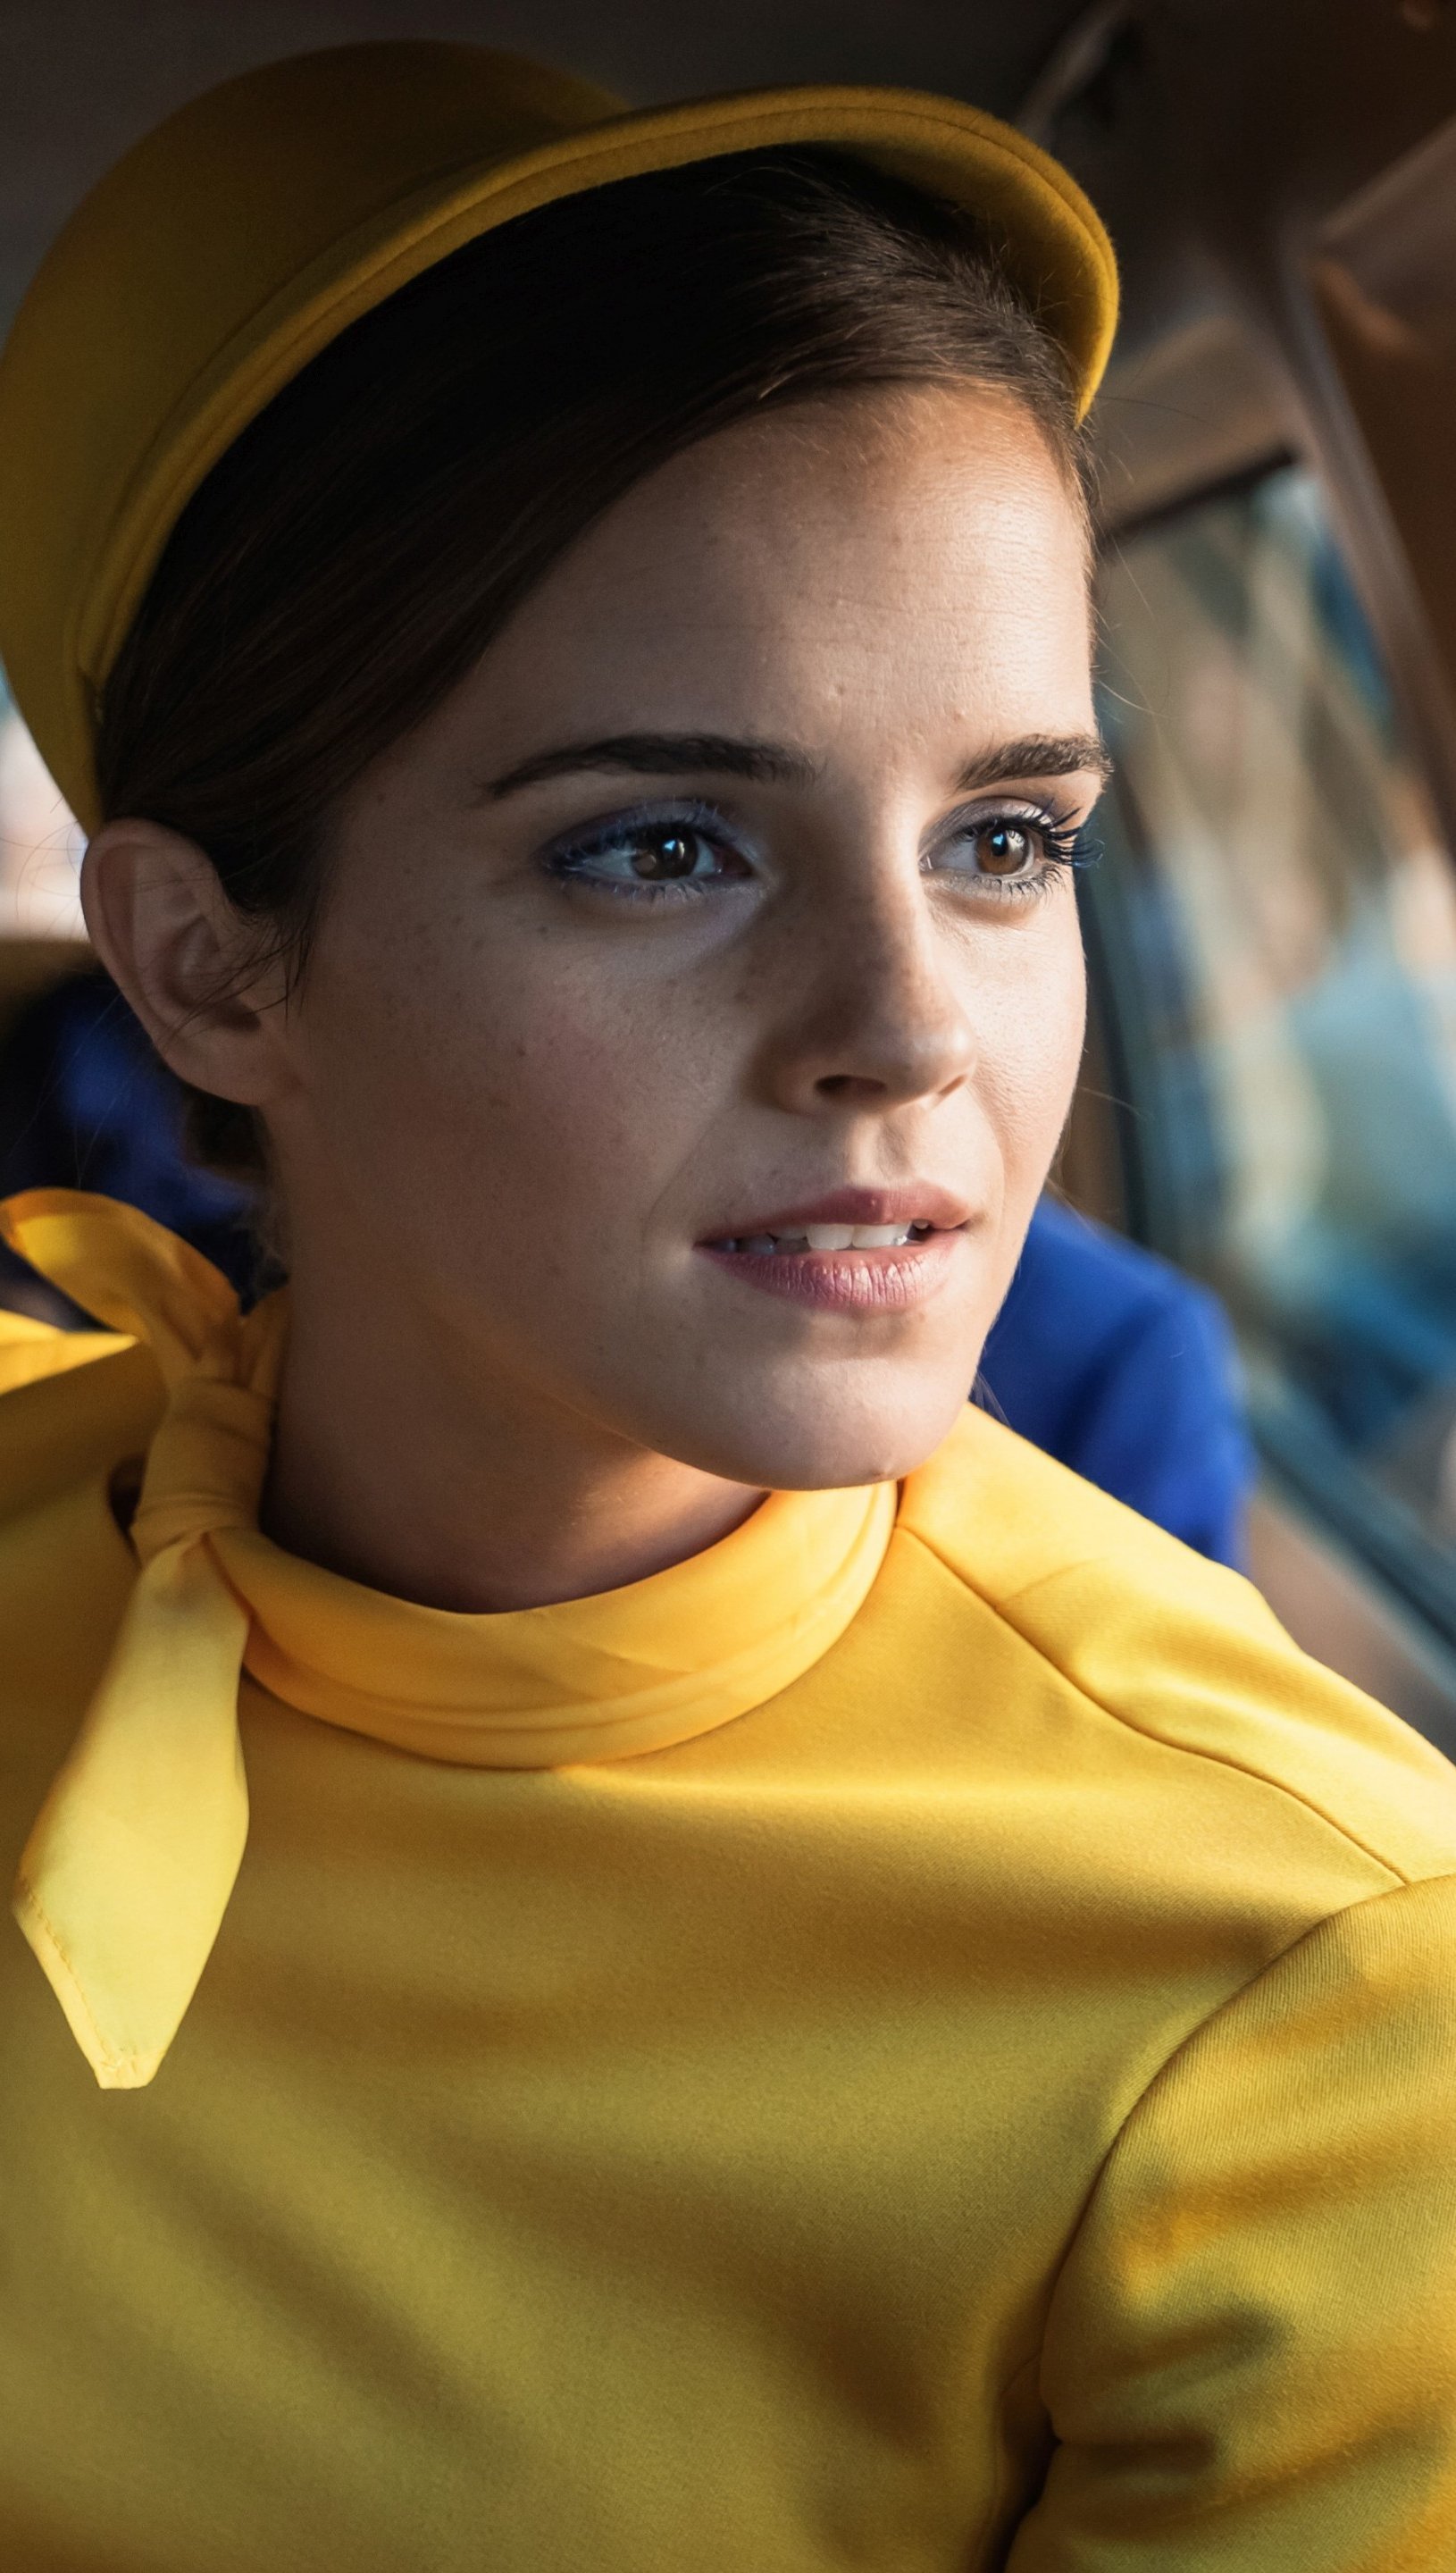 Fondos de pantalla Emma Watson en Película Colonia Dignidad Vertical